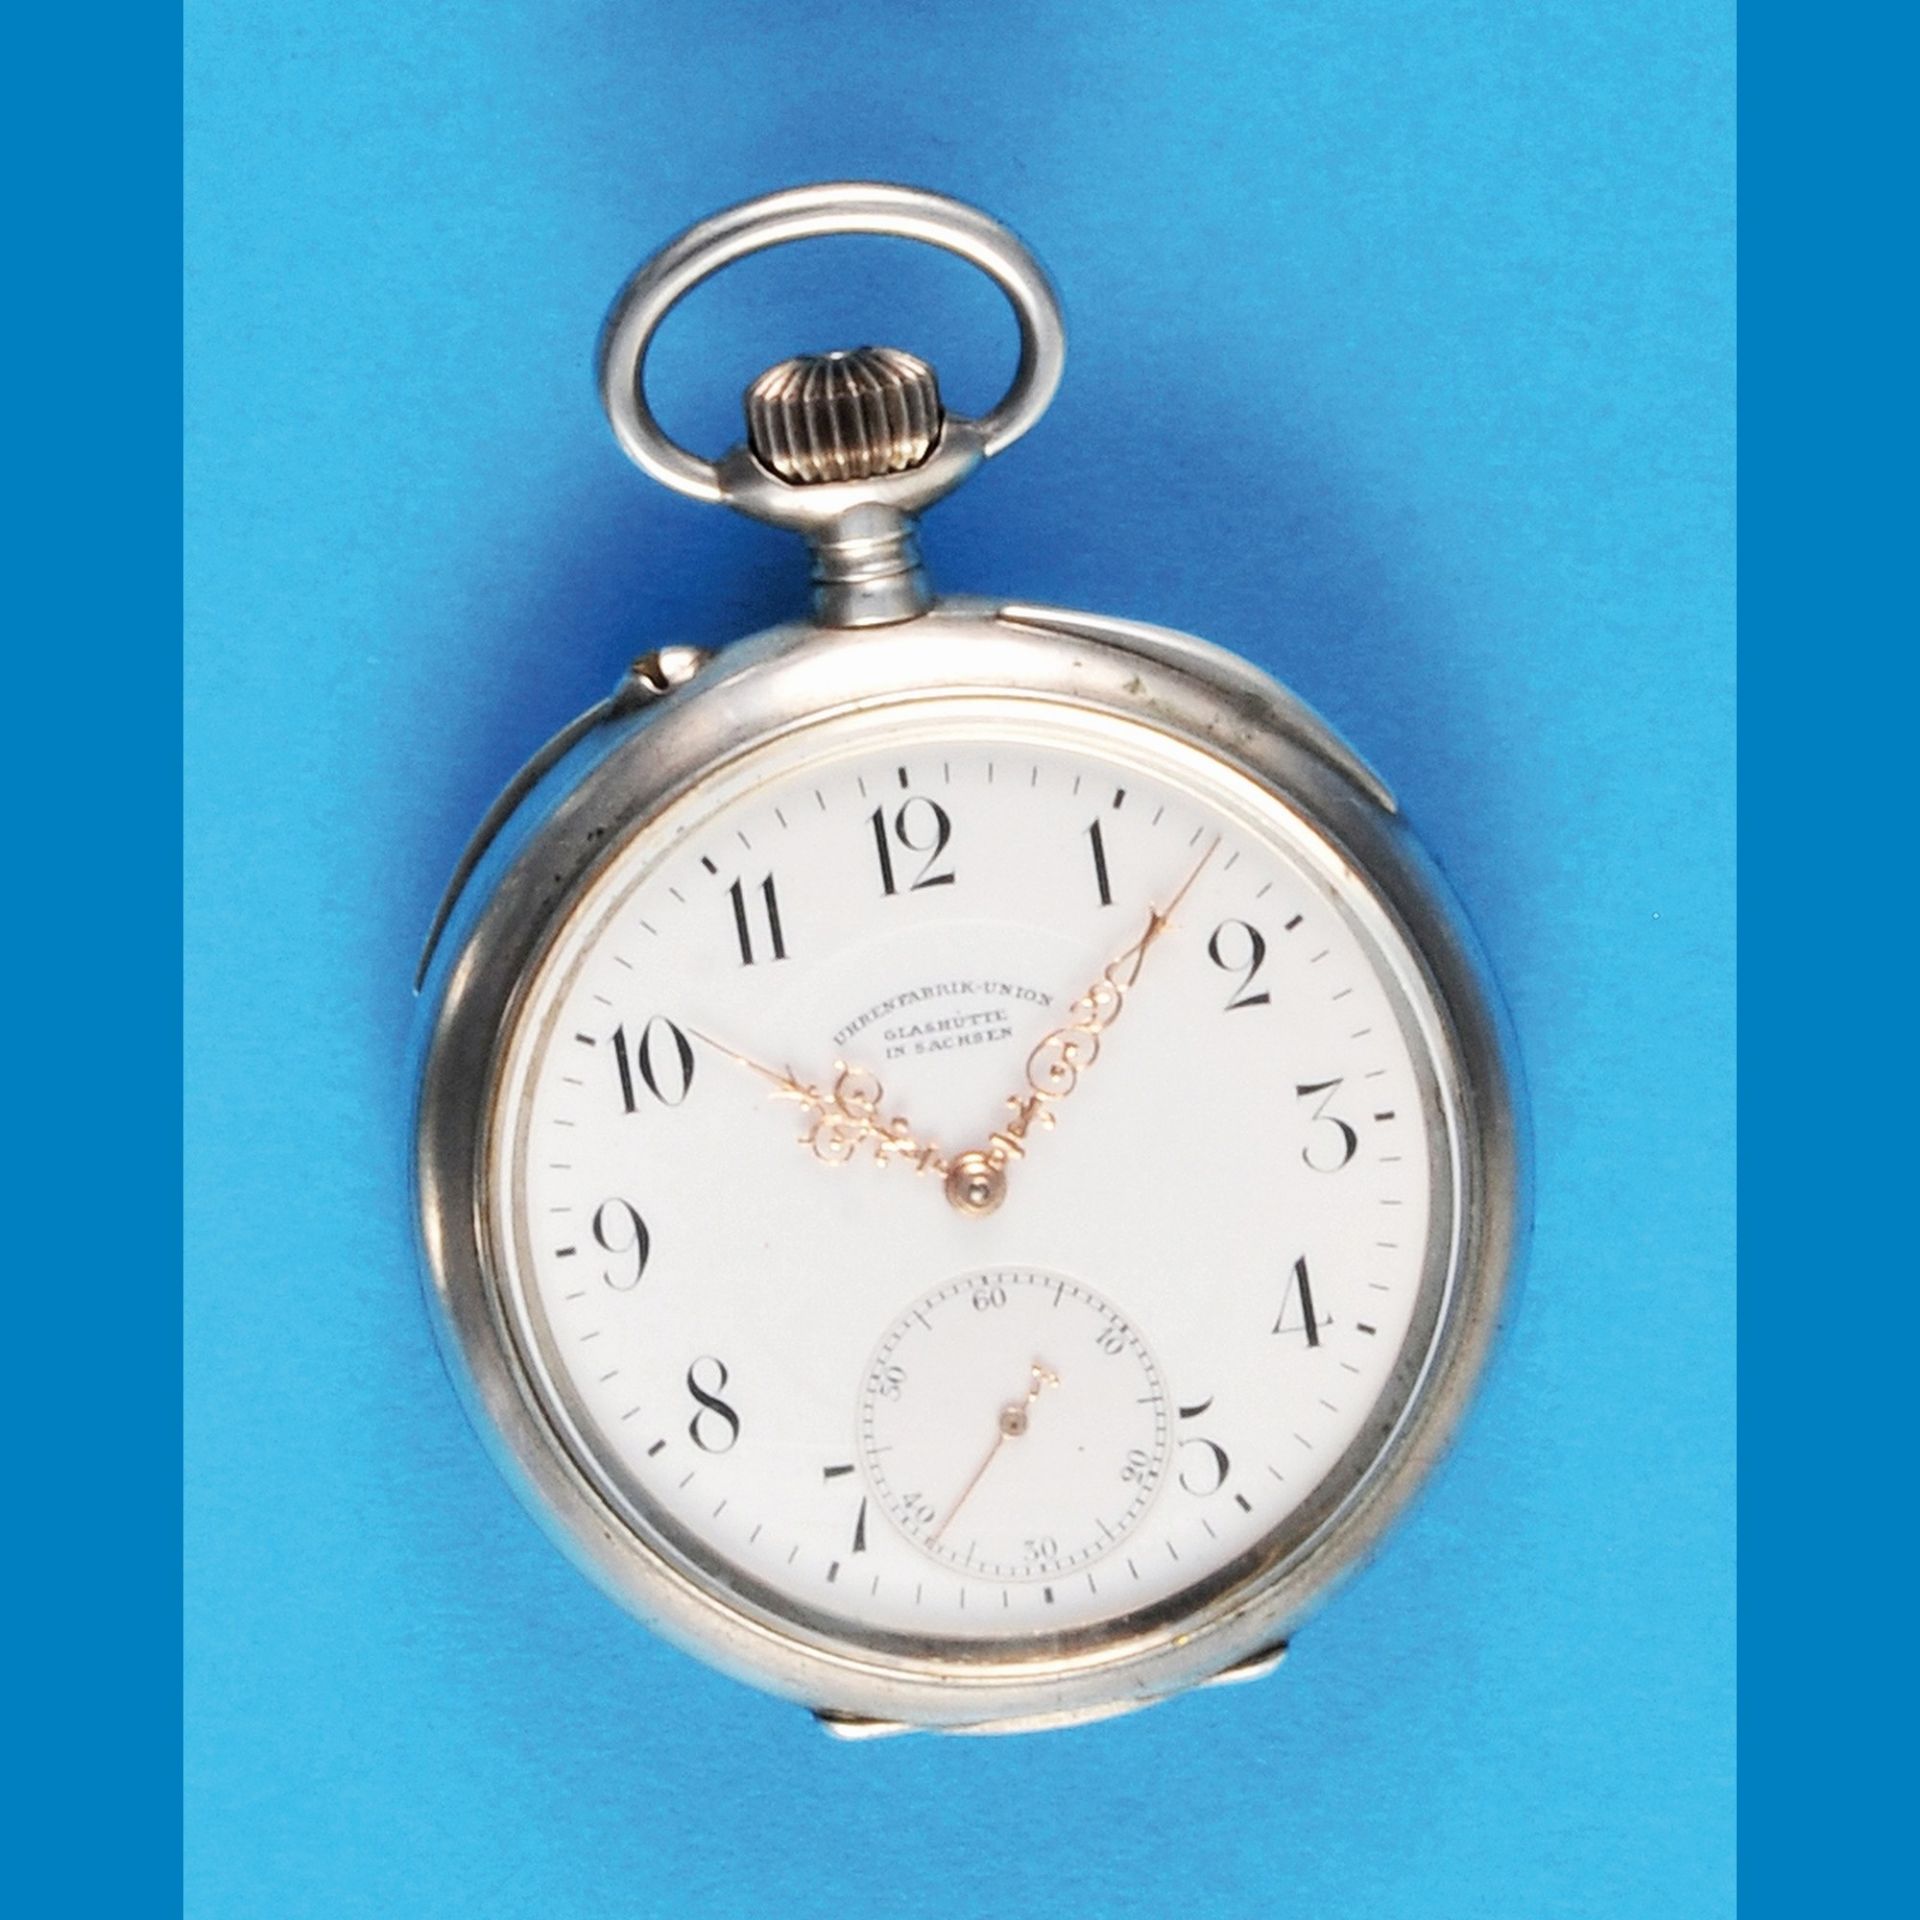 Silberne Taschenuhr, Uhrenfabrik Union Glashütte i. Sa. glattes Gehäuse, Emailzifferblatt mit